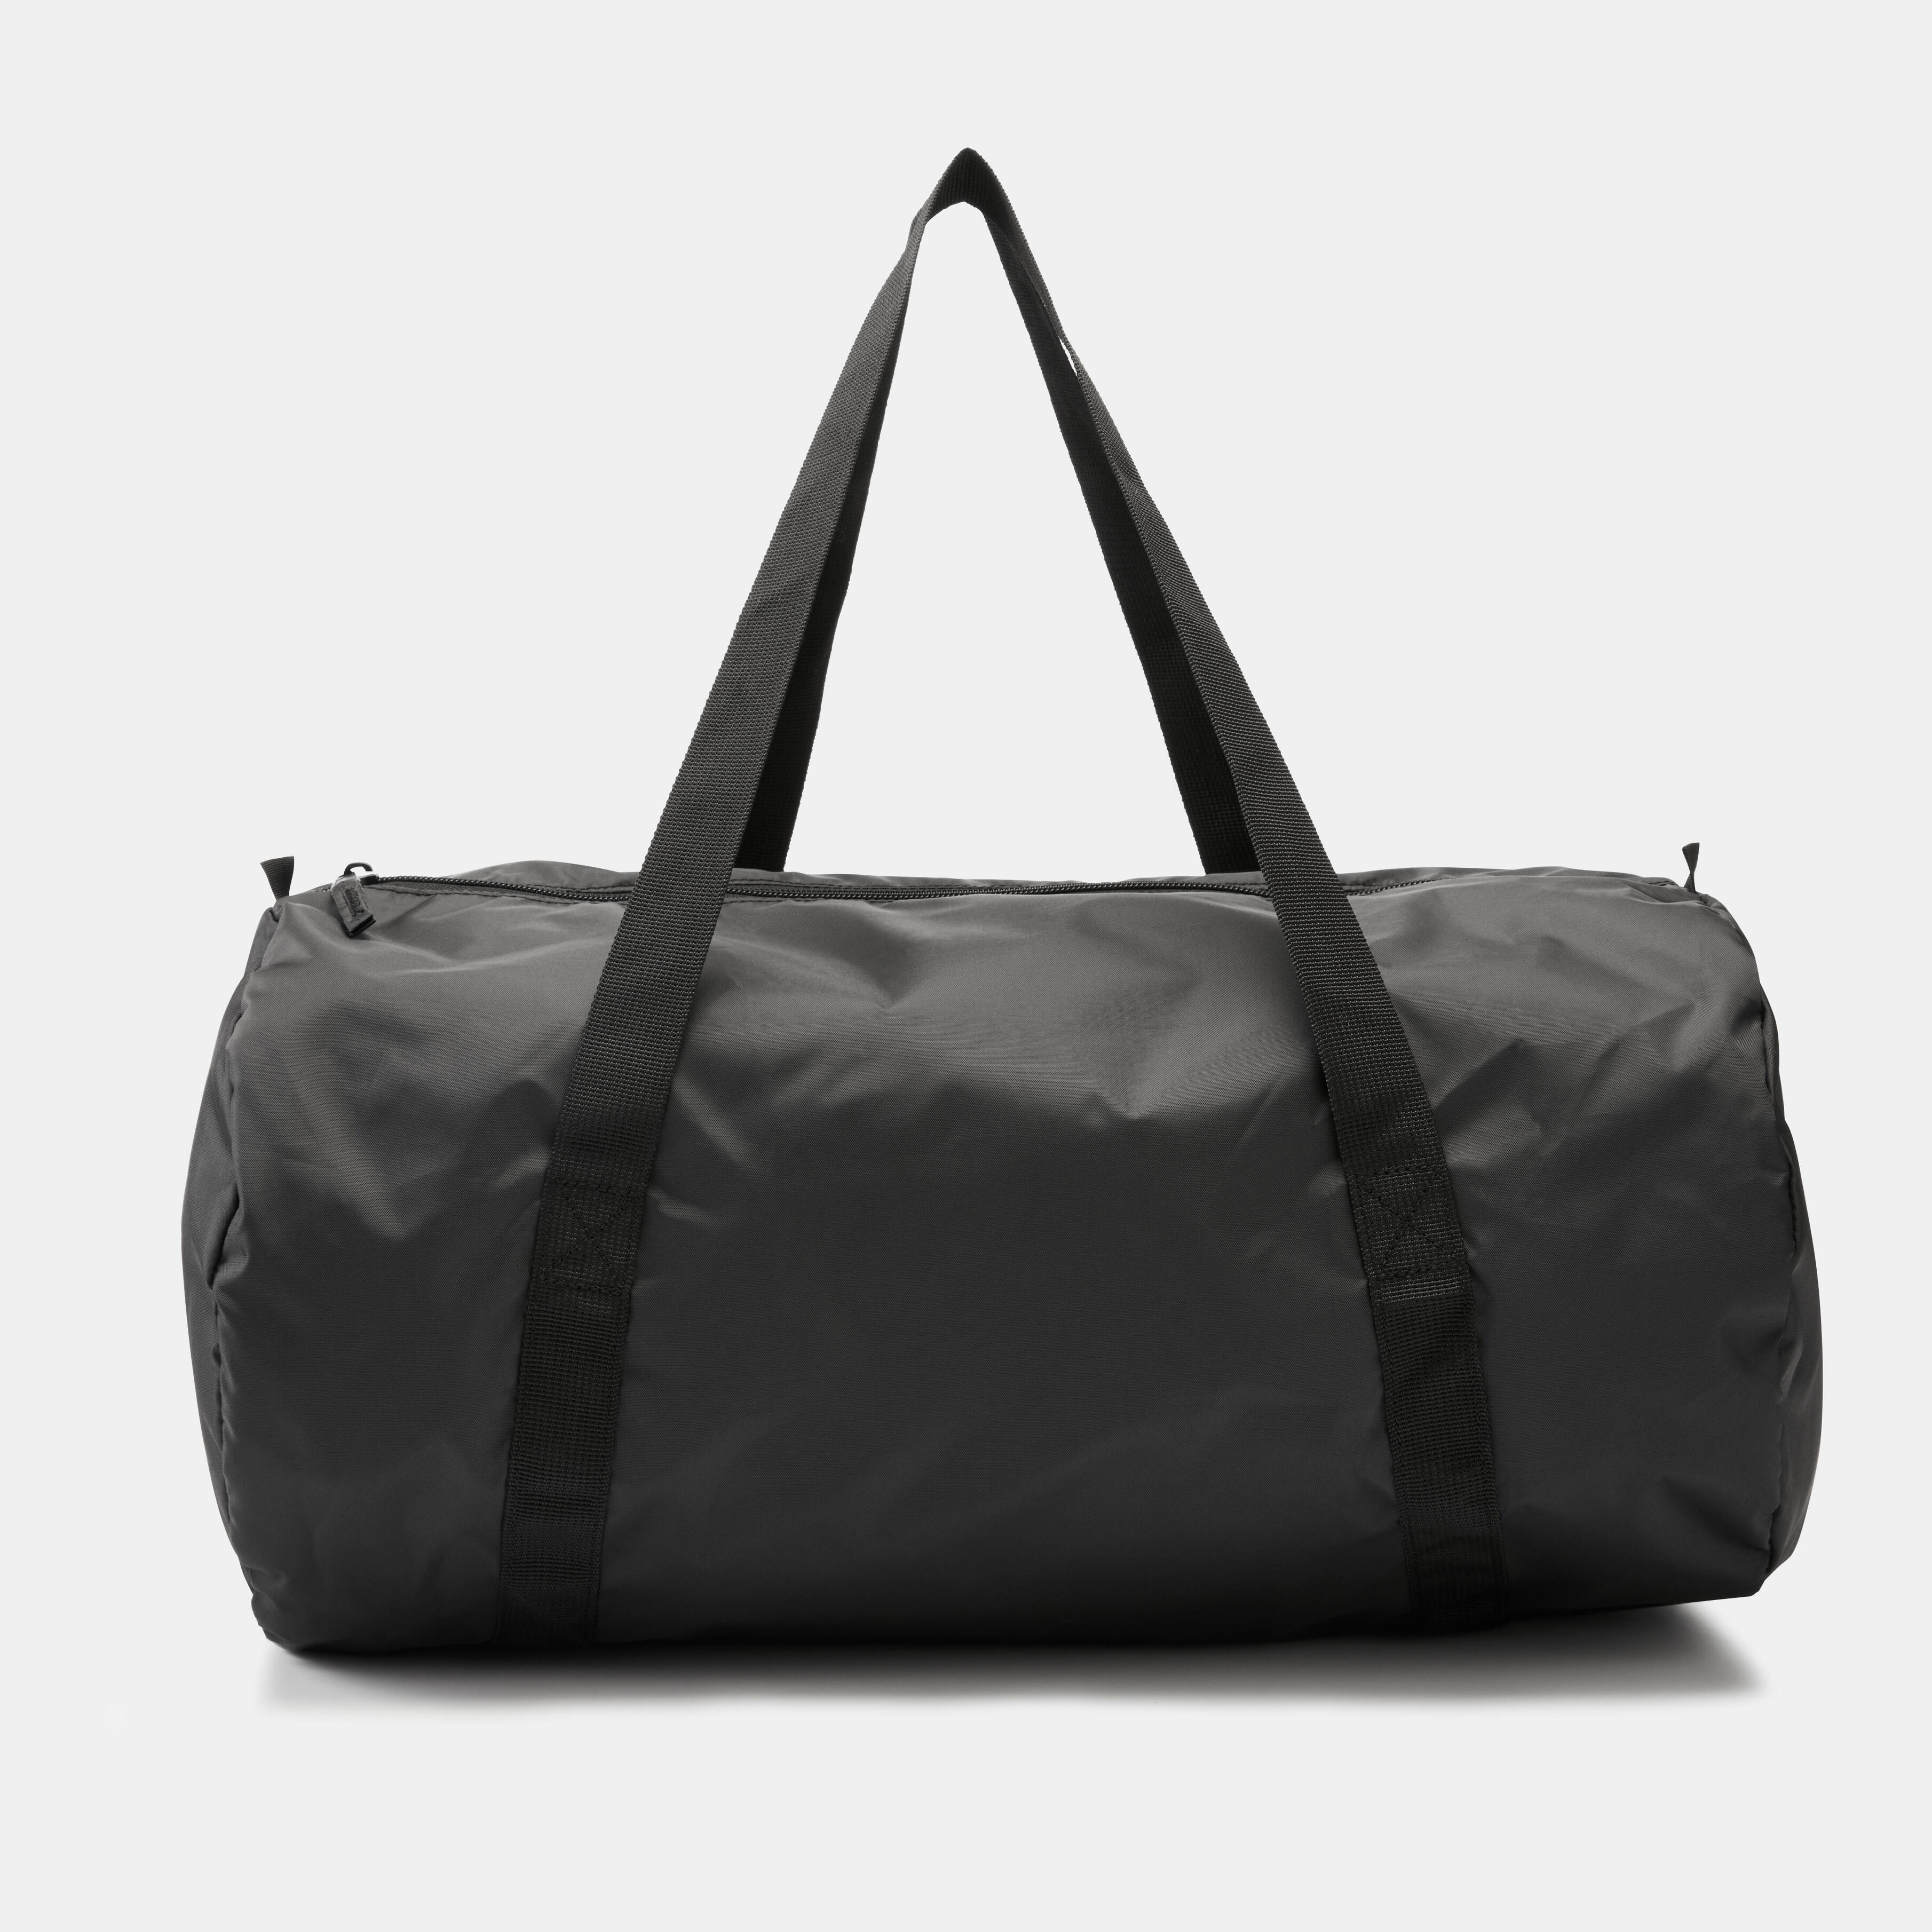 Foldable Sports Carry Bag 30L - Black